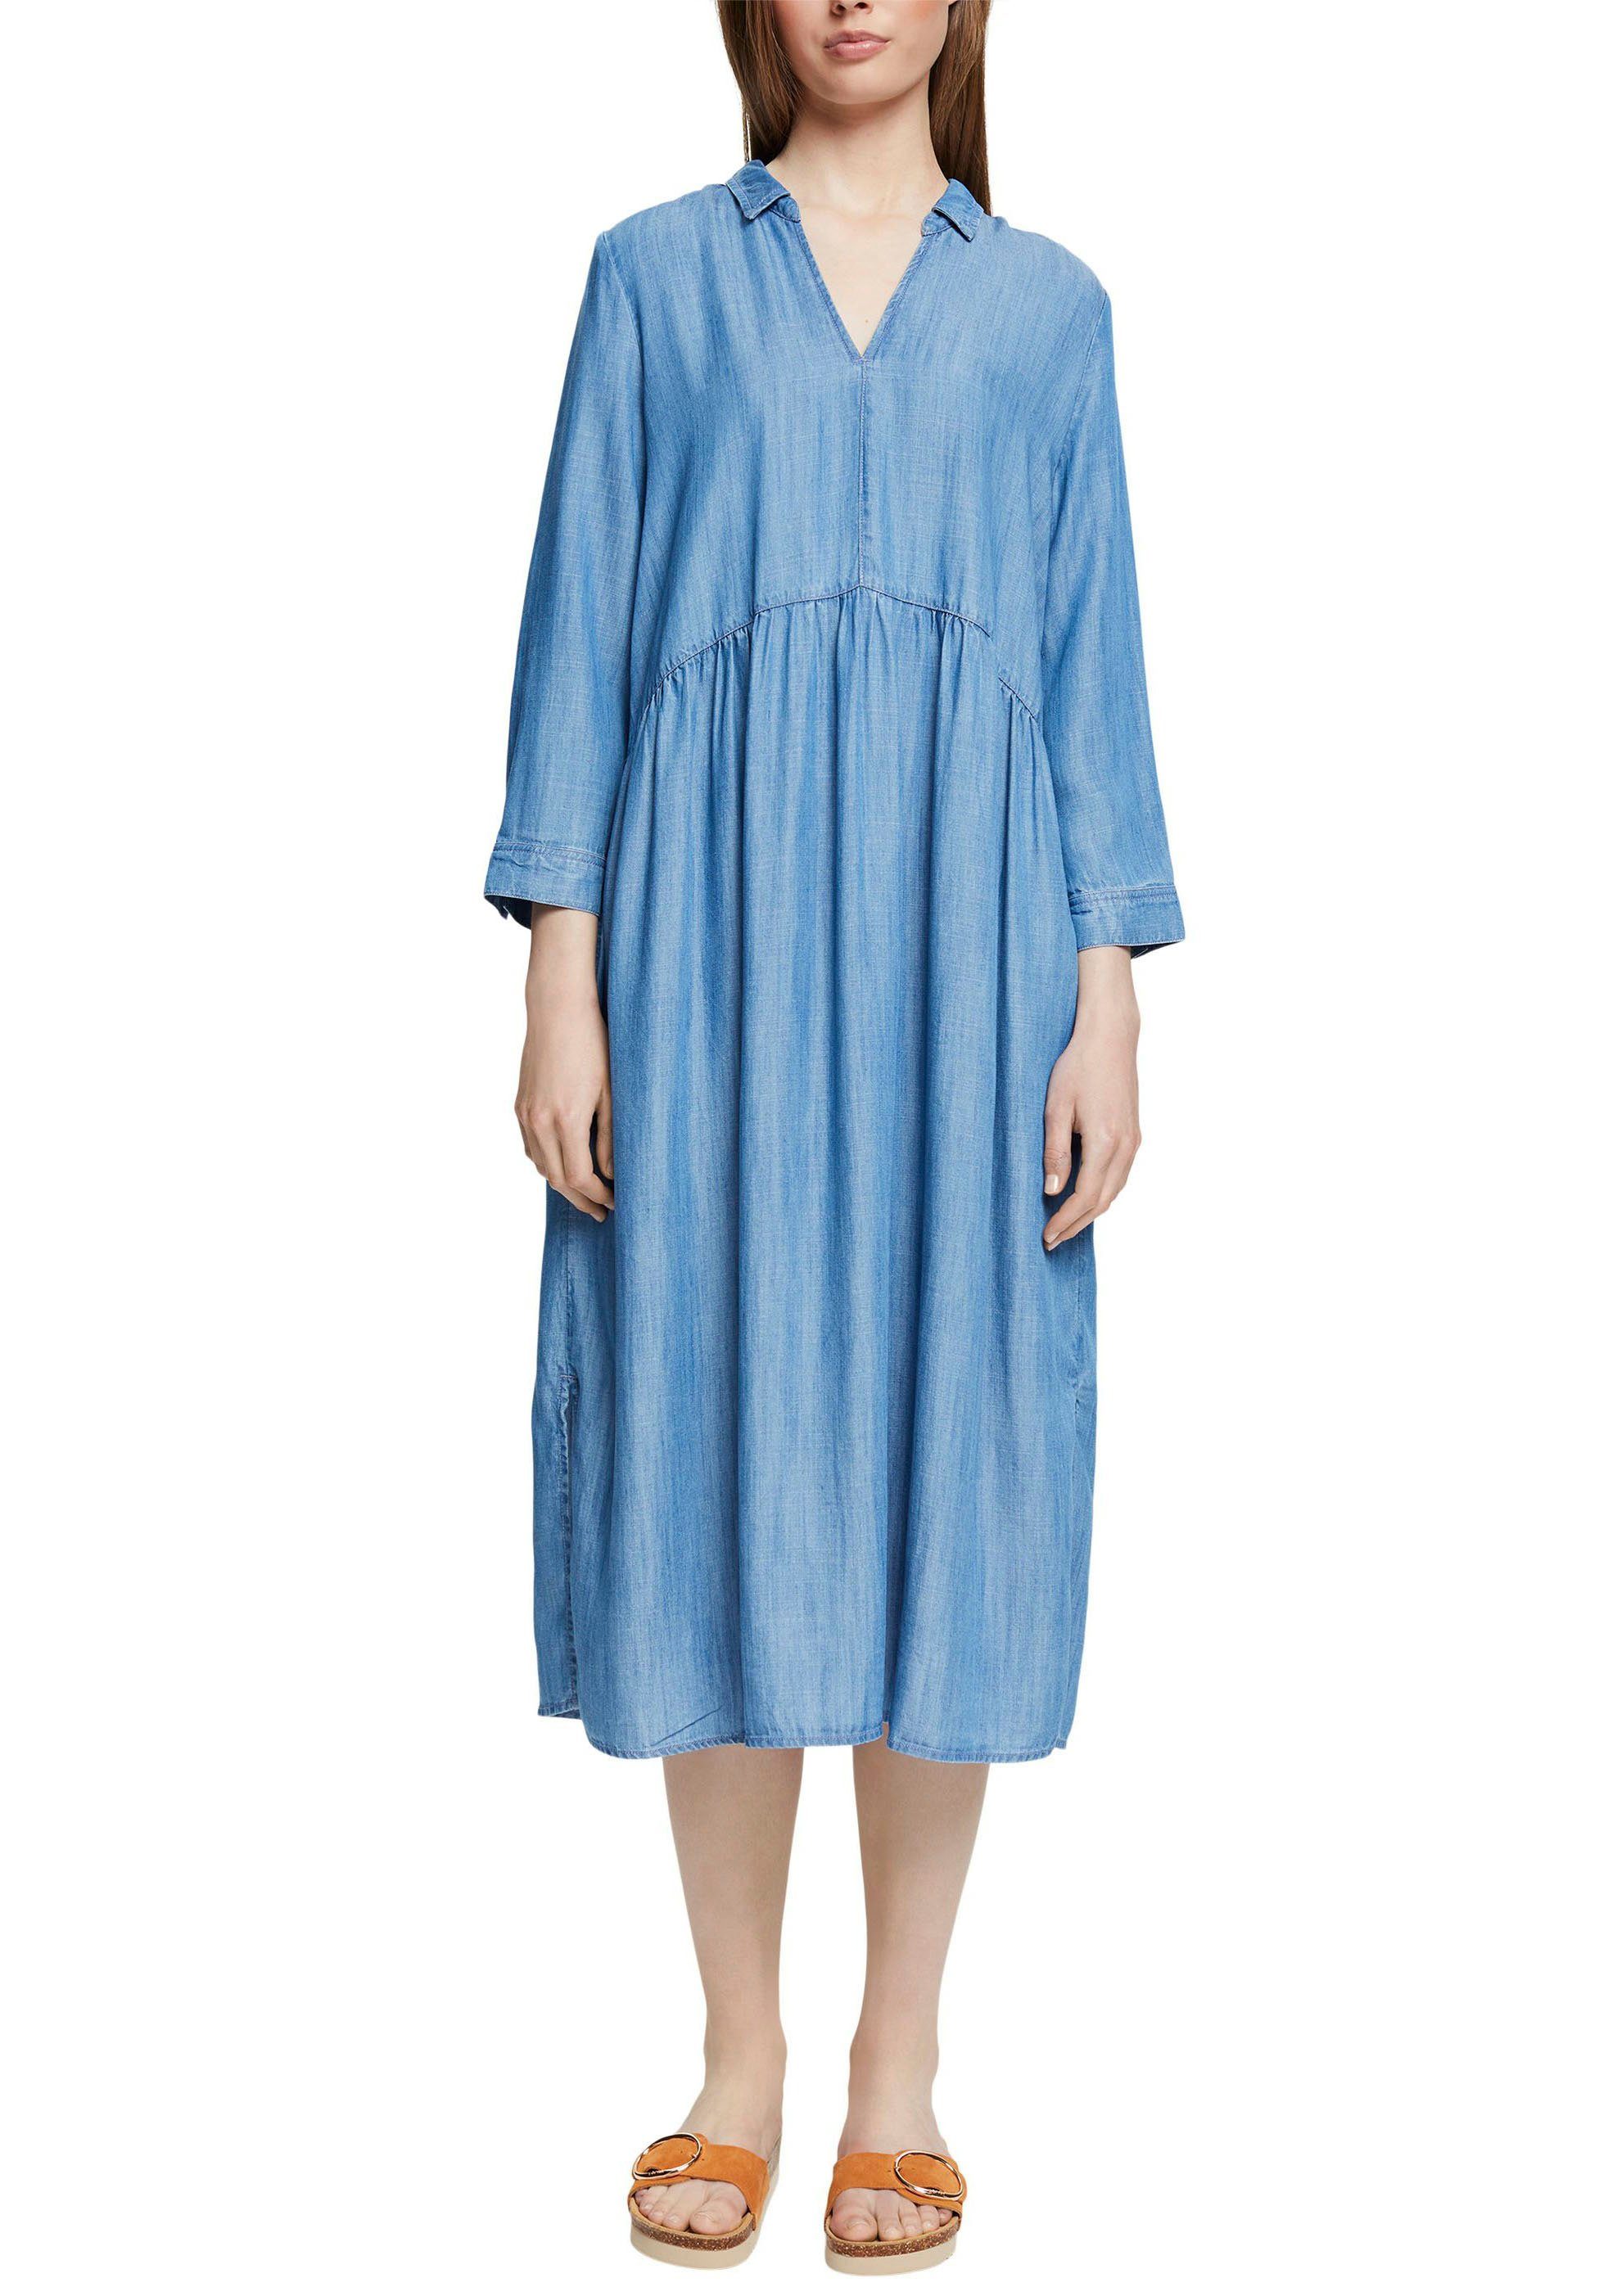 Banyan Carrière Zijdelings Esprit Midi-jurk met steekzakken opzij nu online bestellen | OTTO